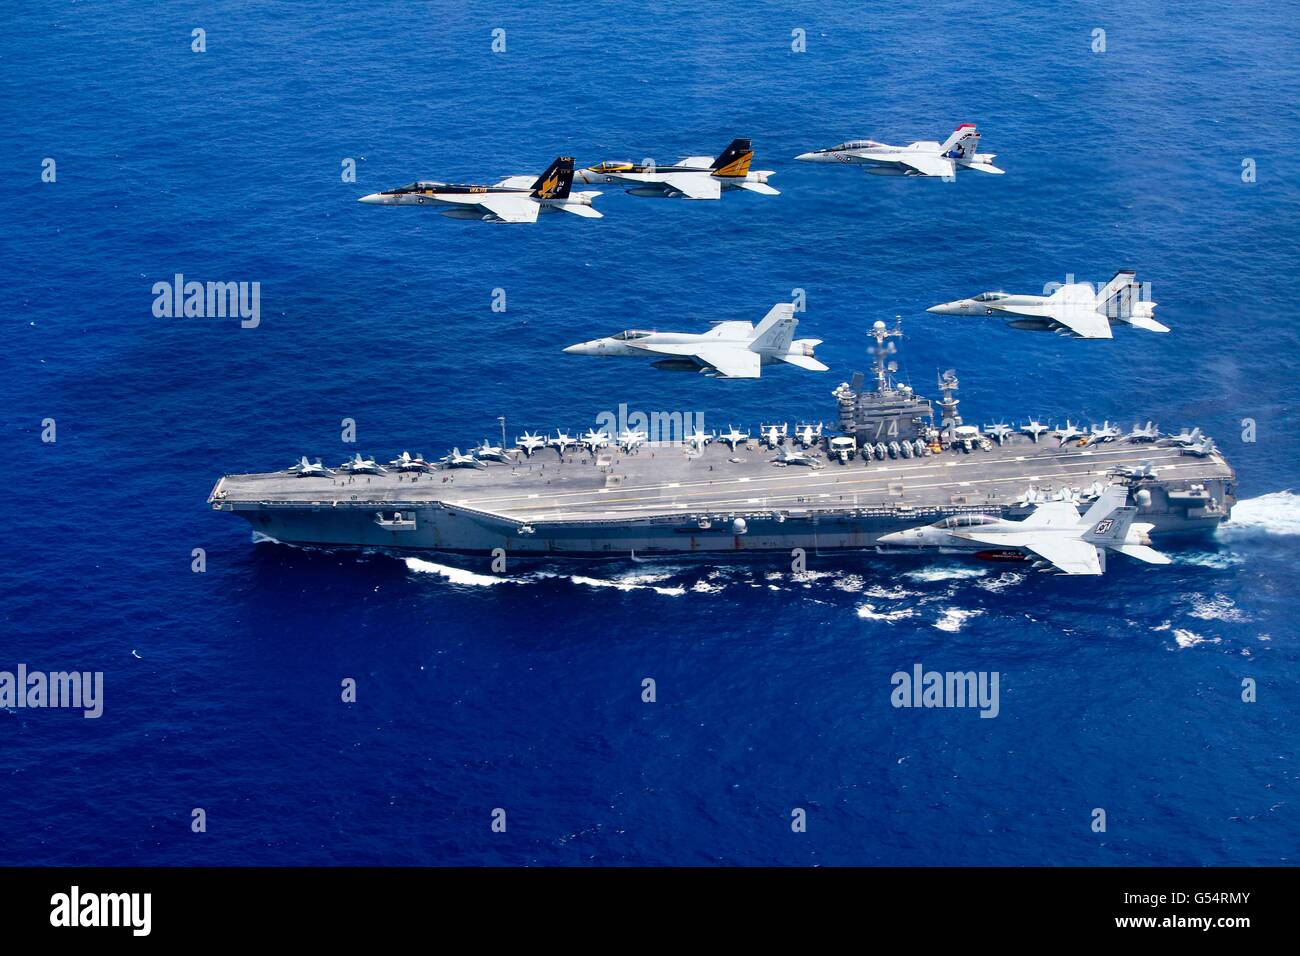 U.S Navy F/A-18 Hornet voler en formation au cours de la classe Nimitz supercarrier à propulsion nucléaire USS John C. Stennis pendant les opérations de double avec le groupe aéronaval du USS Ronald Reagan, le 18 juin 2016 dans la mer des Philippines. Banque D'Images